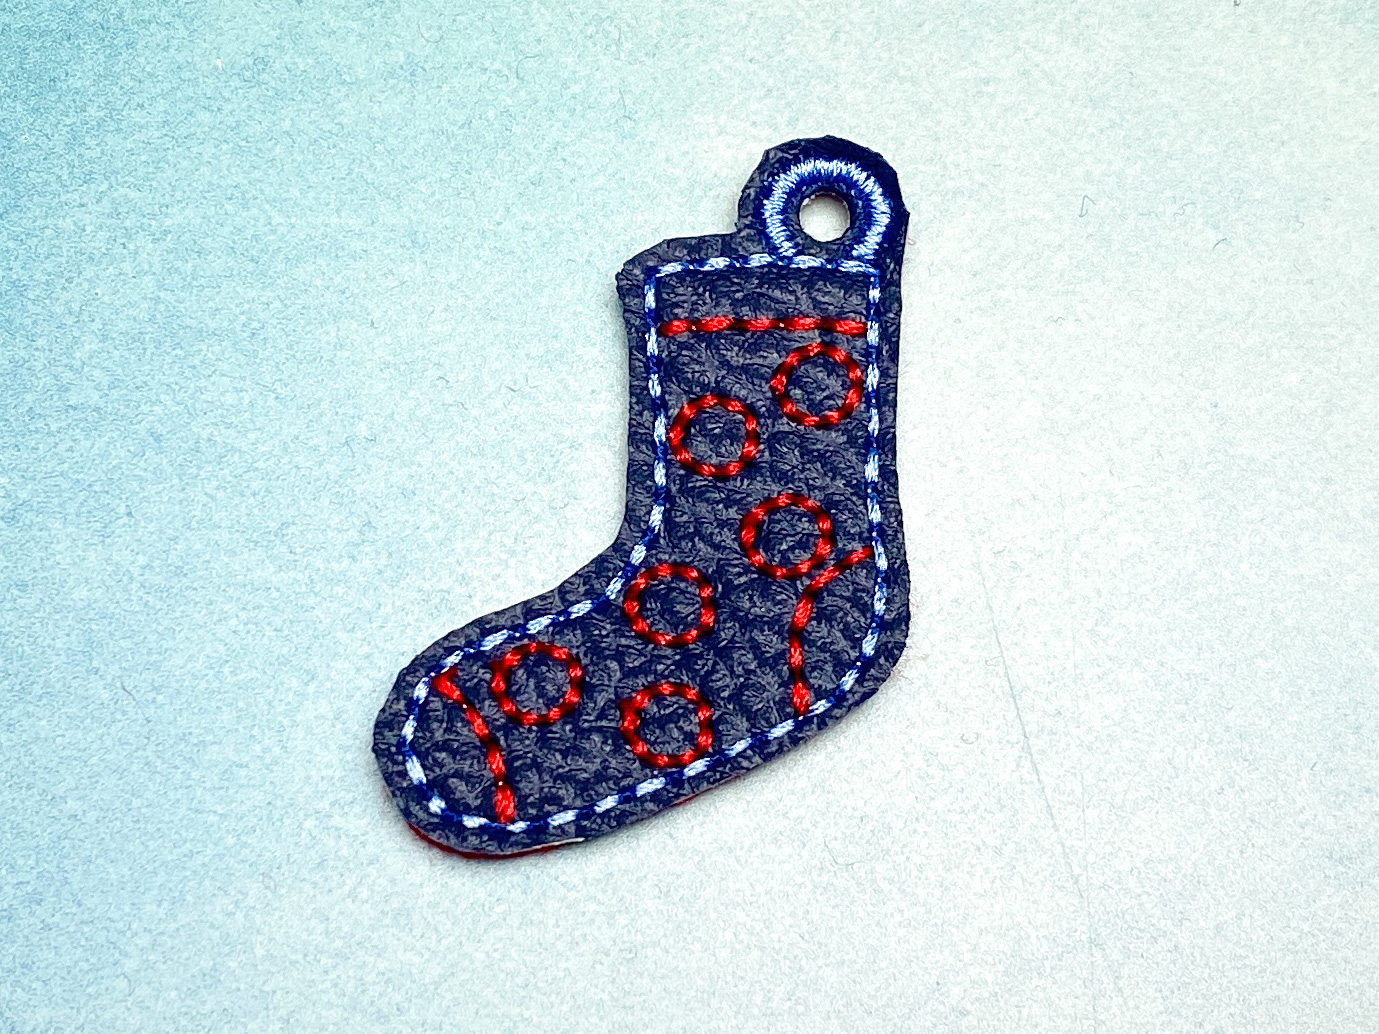 Schlüsselanhänger dunkelblaue Socke mit roten Punkten -Welt Down Syndrom Tag